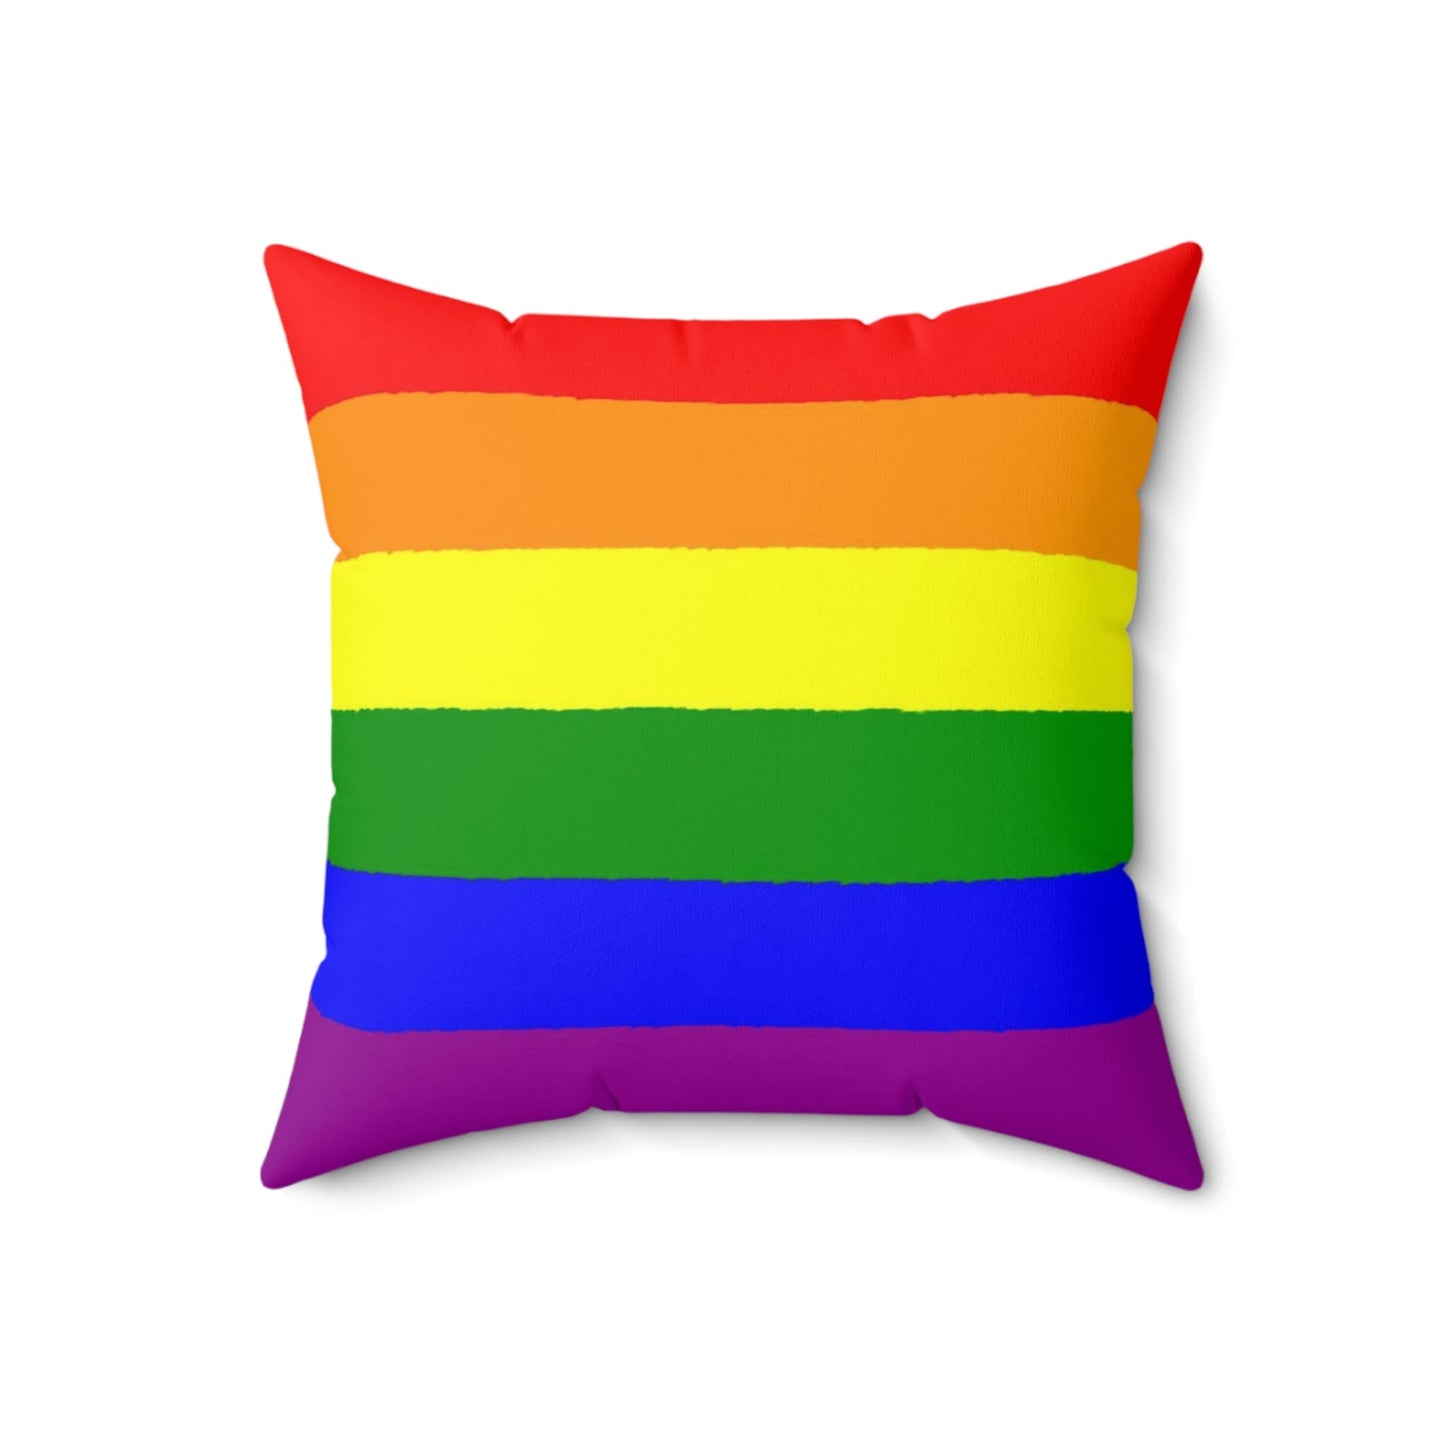 LGBTQ pride pillow flatlay